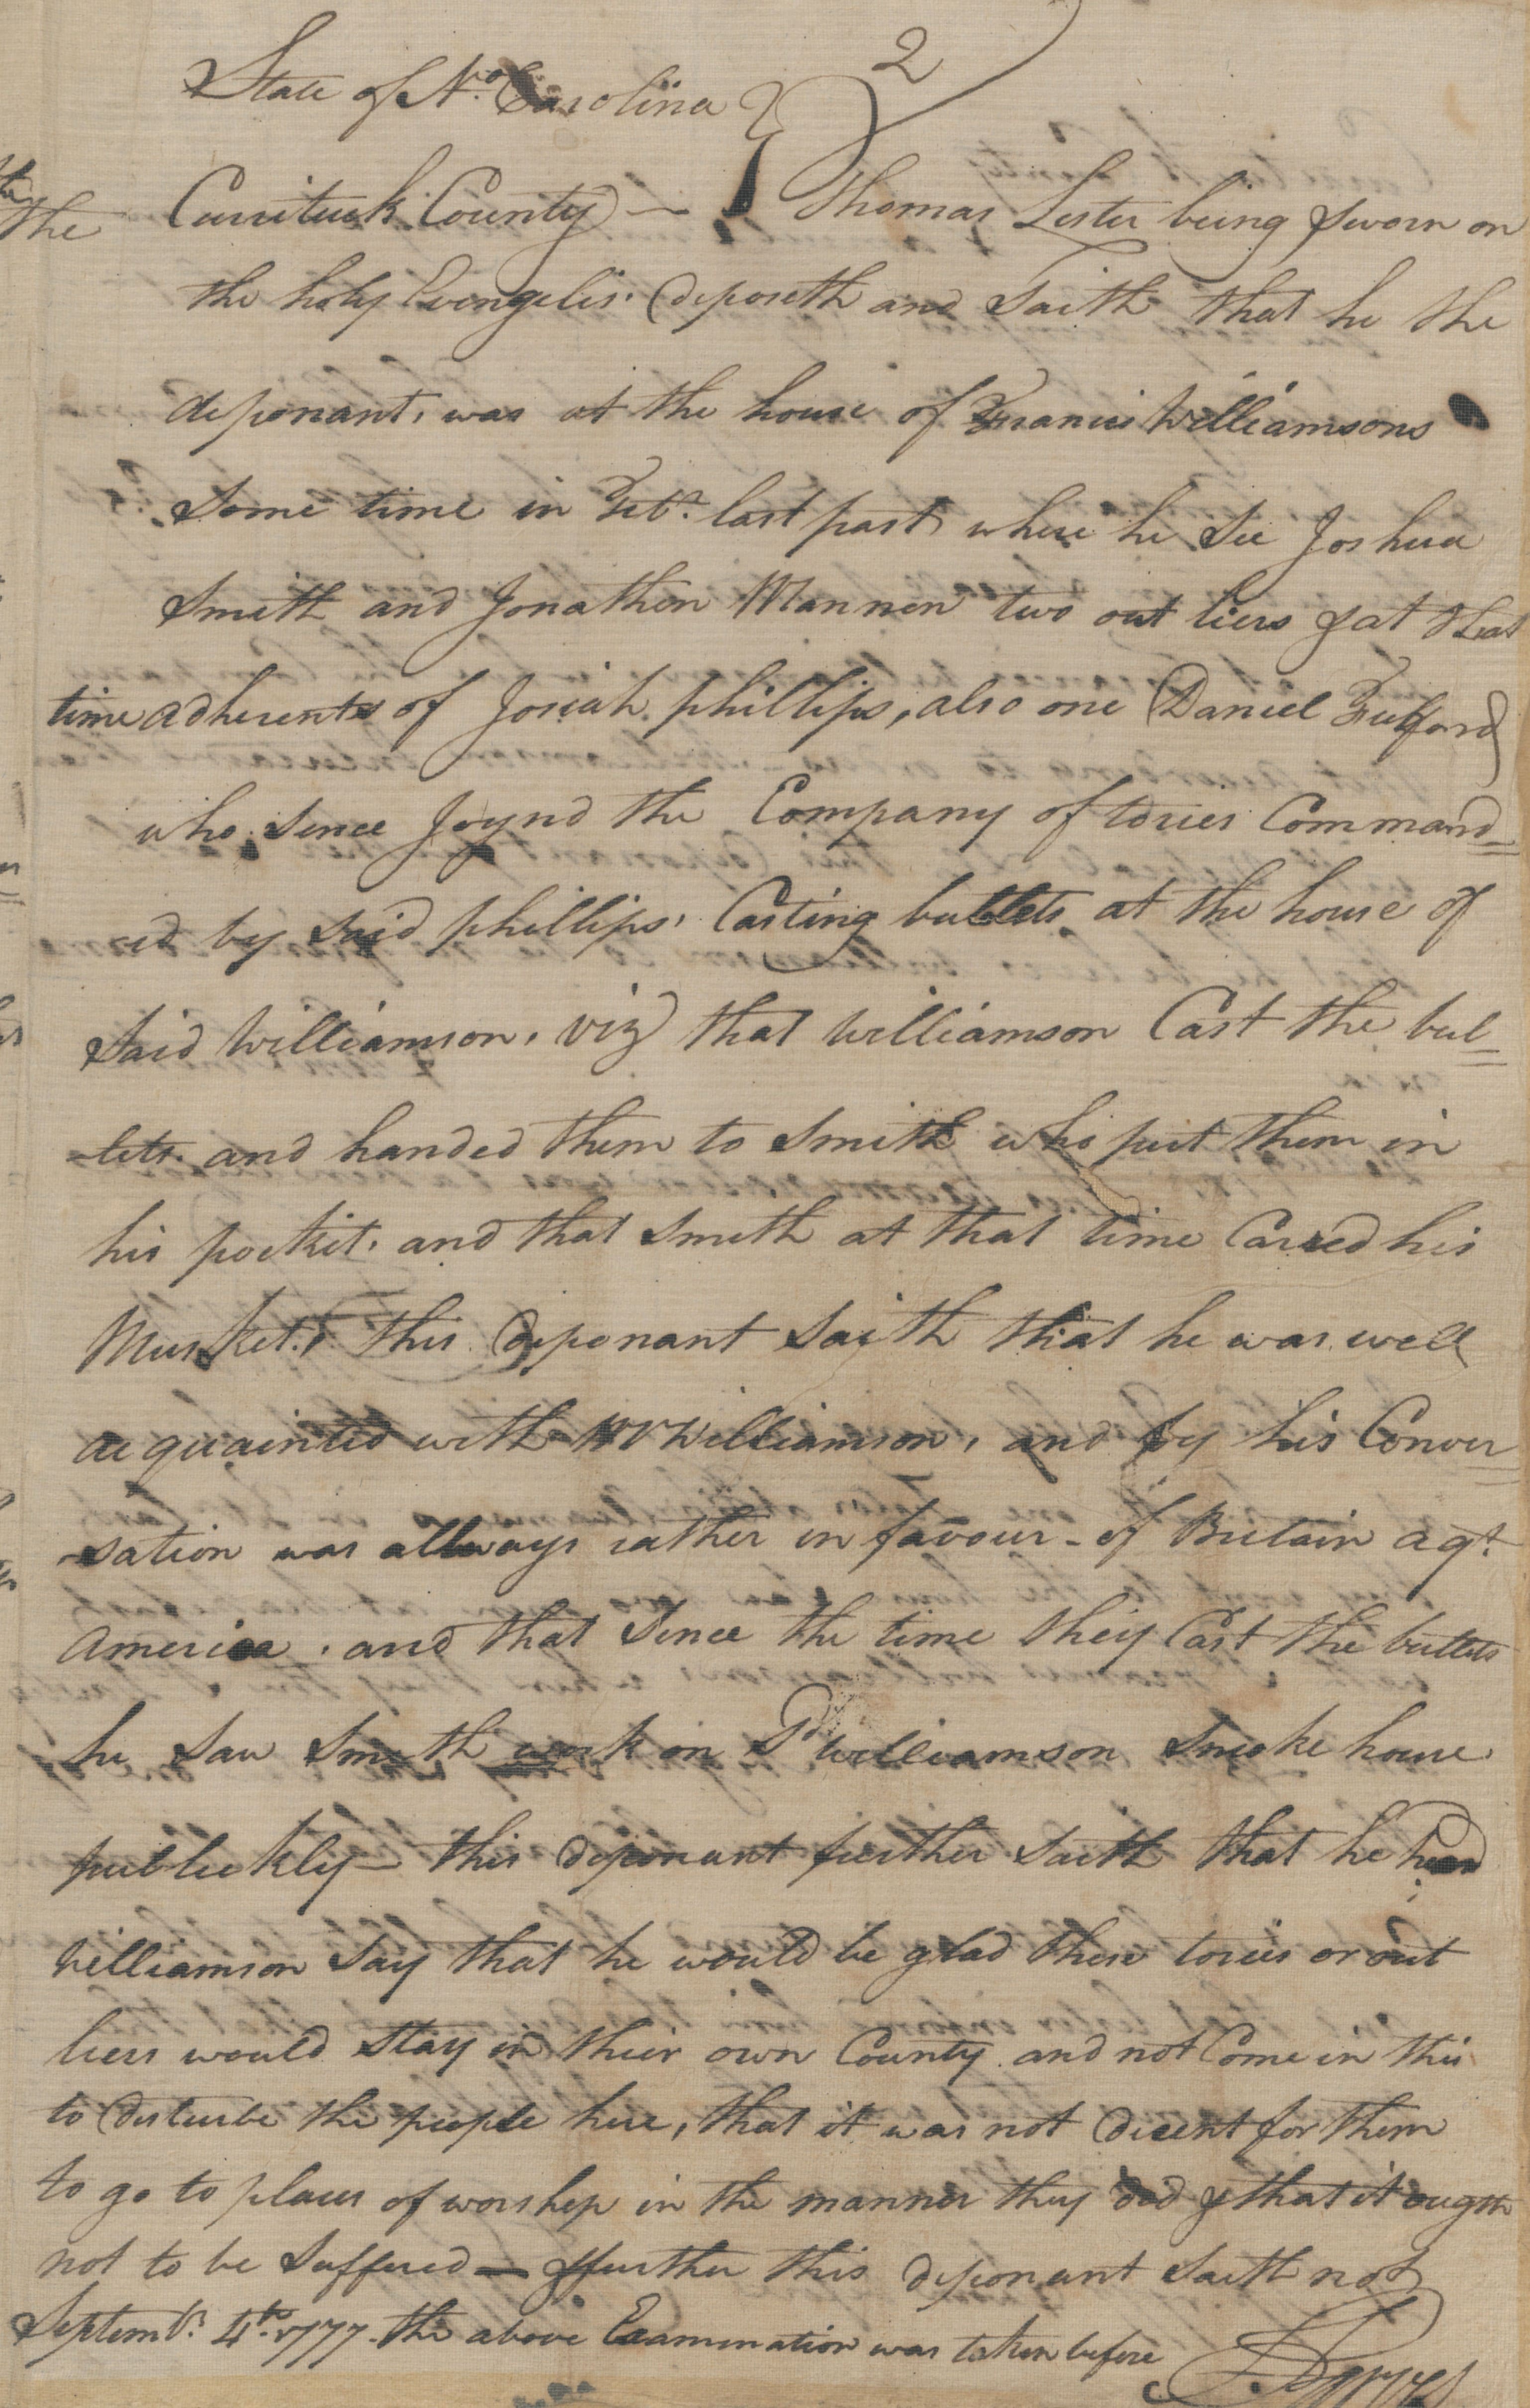 Deposition of Thomas Lester, 4 September 1777